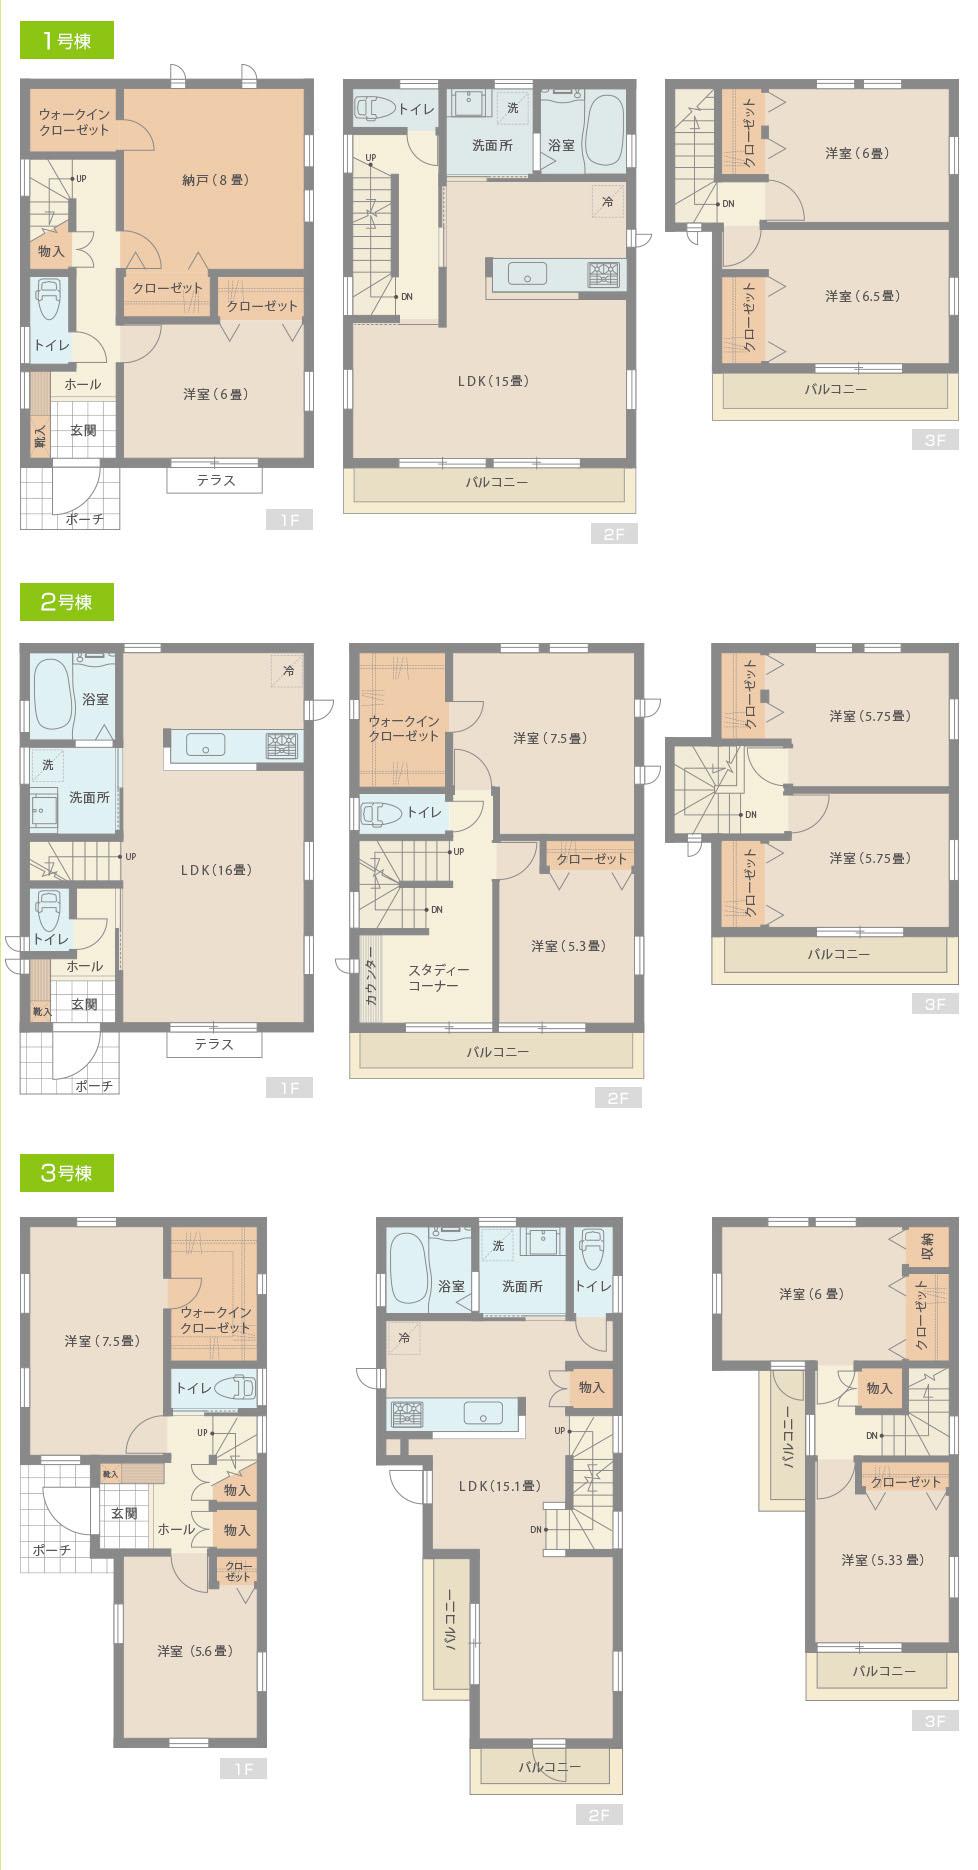 Floor plan. 42,800,000 yen, 4LDK, Land area 90.55 sq m , Building area 106.8 sq m 1 Building 2 Building 3 Building